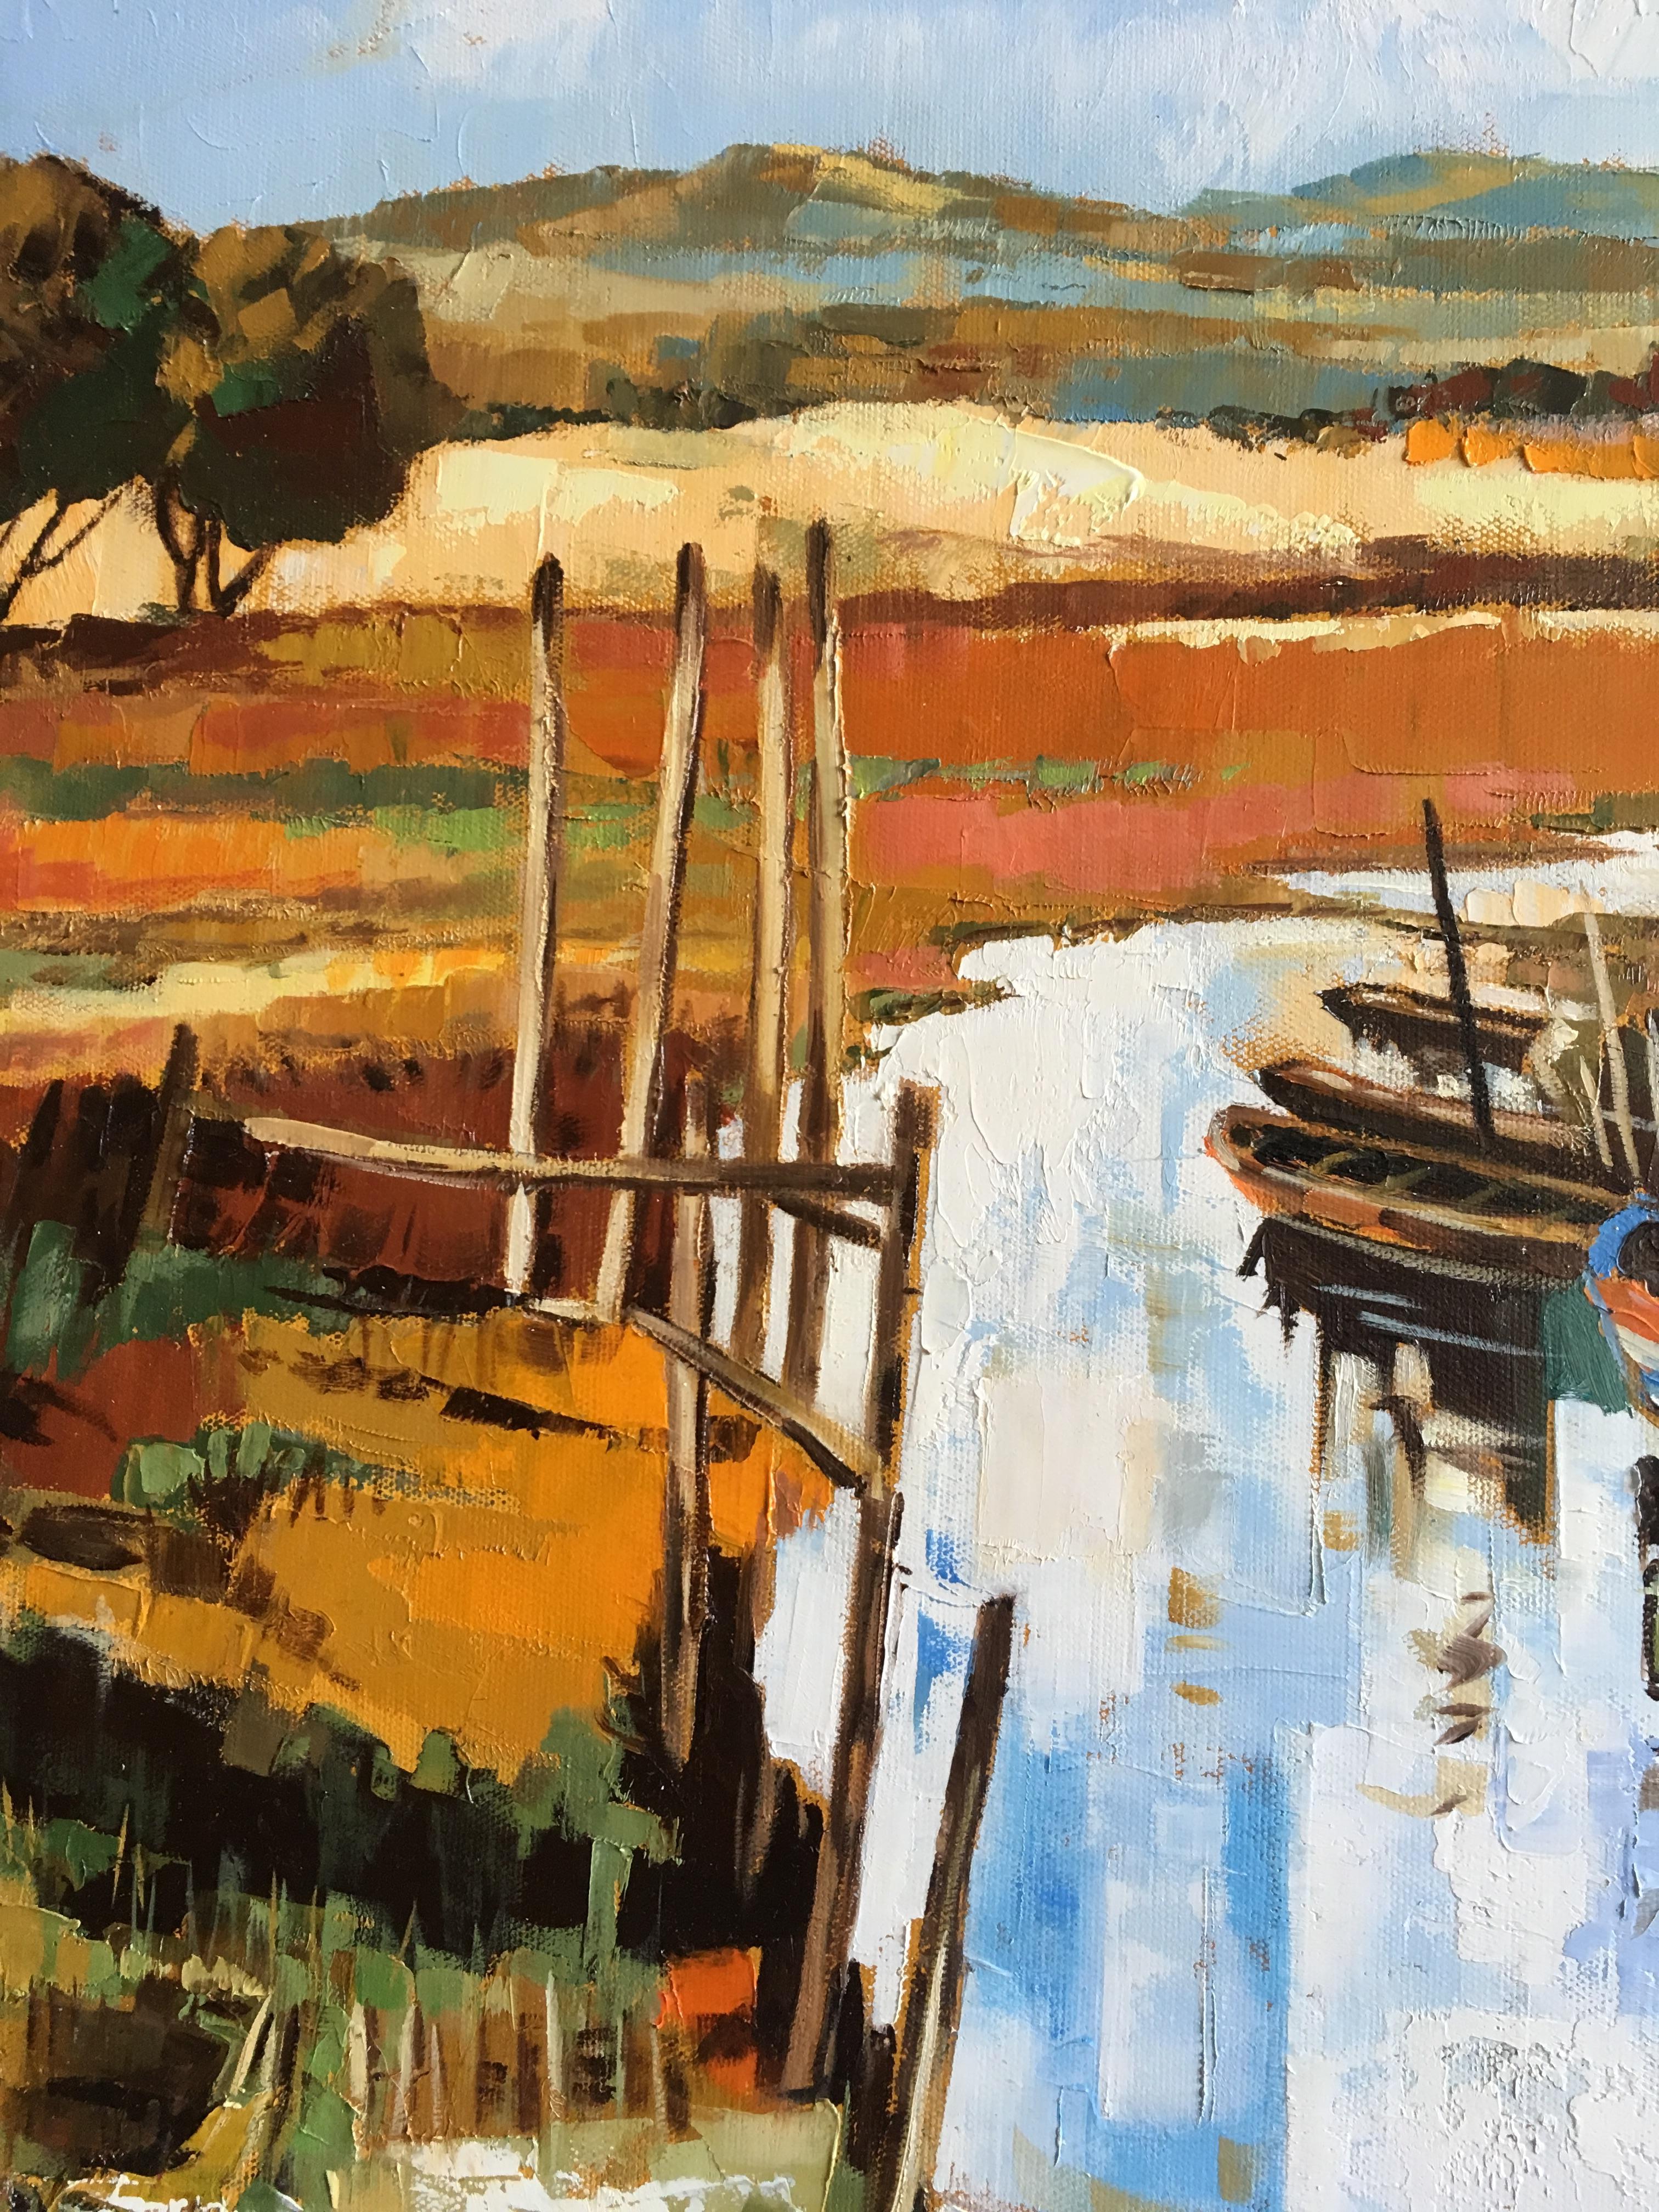 The canal – Painting von Jori Duran